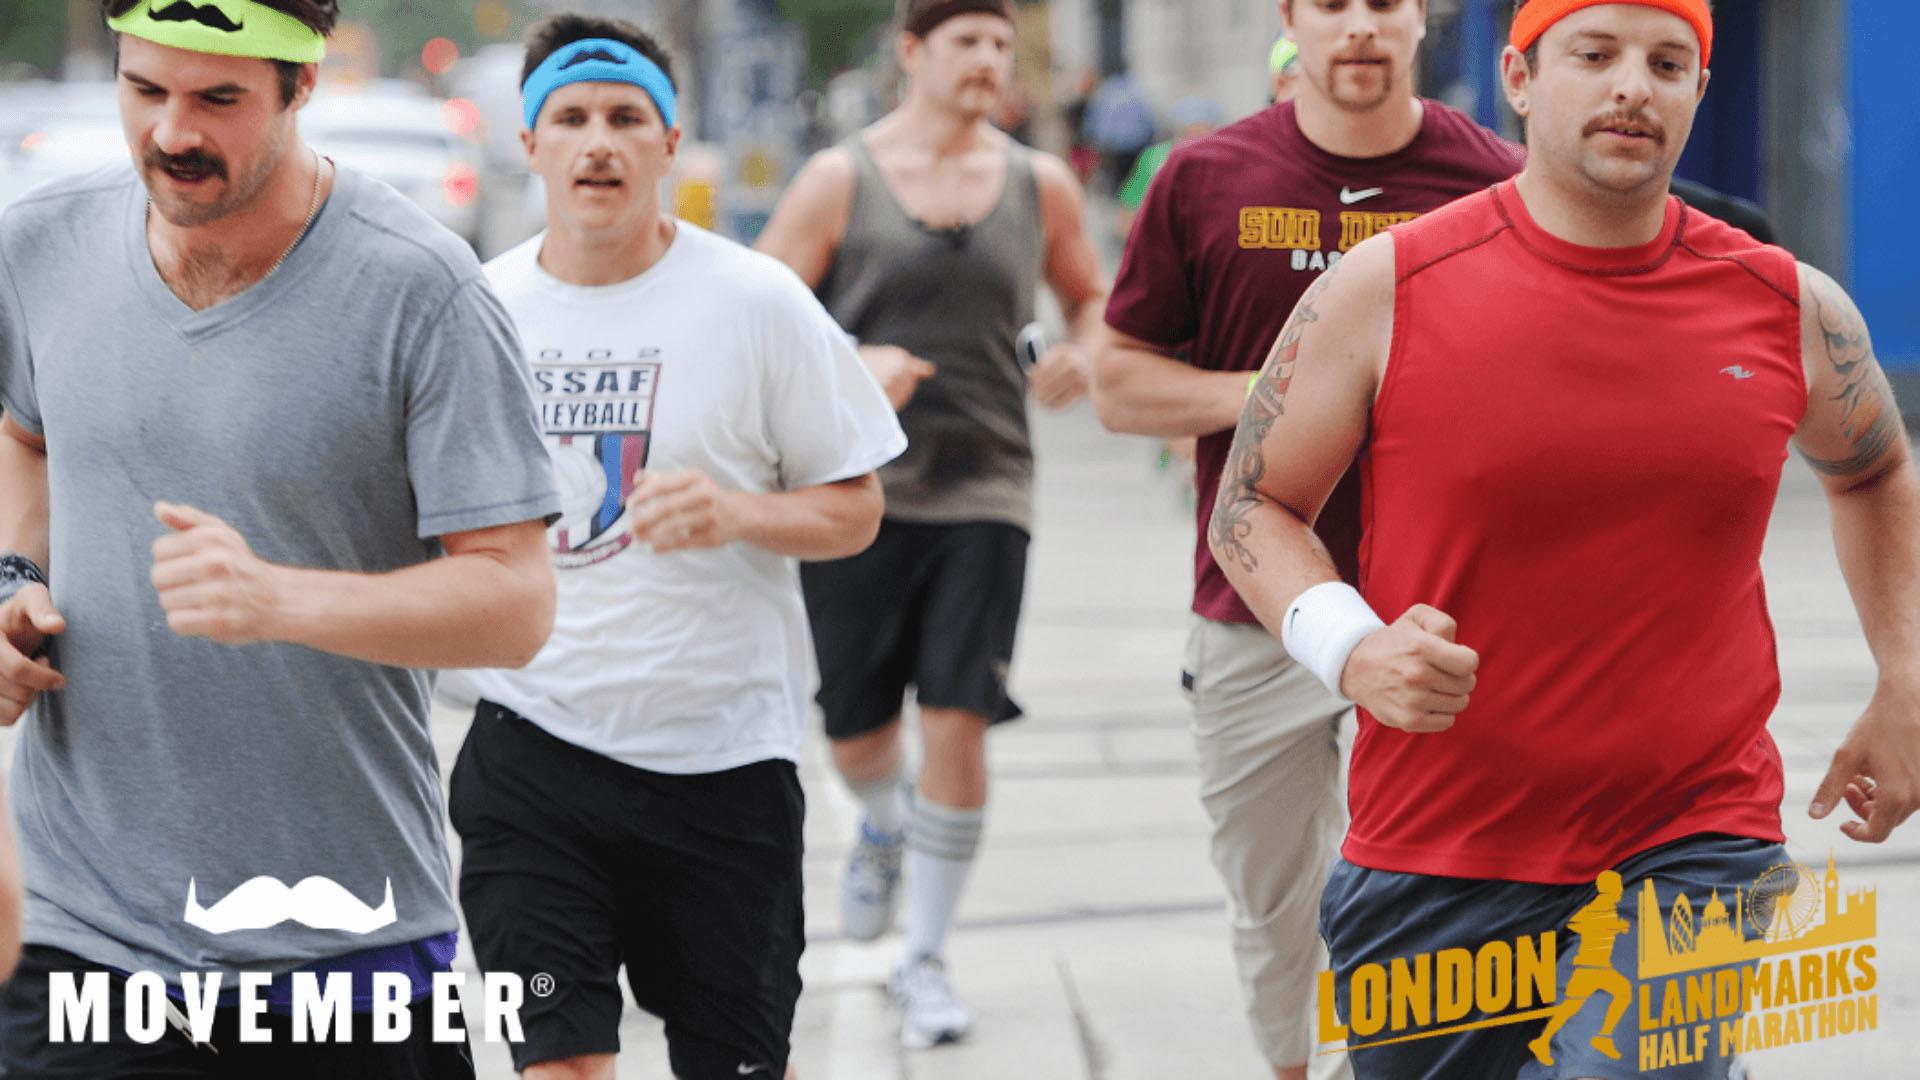 Men in Movember-branded attire running London Half Marathon.